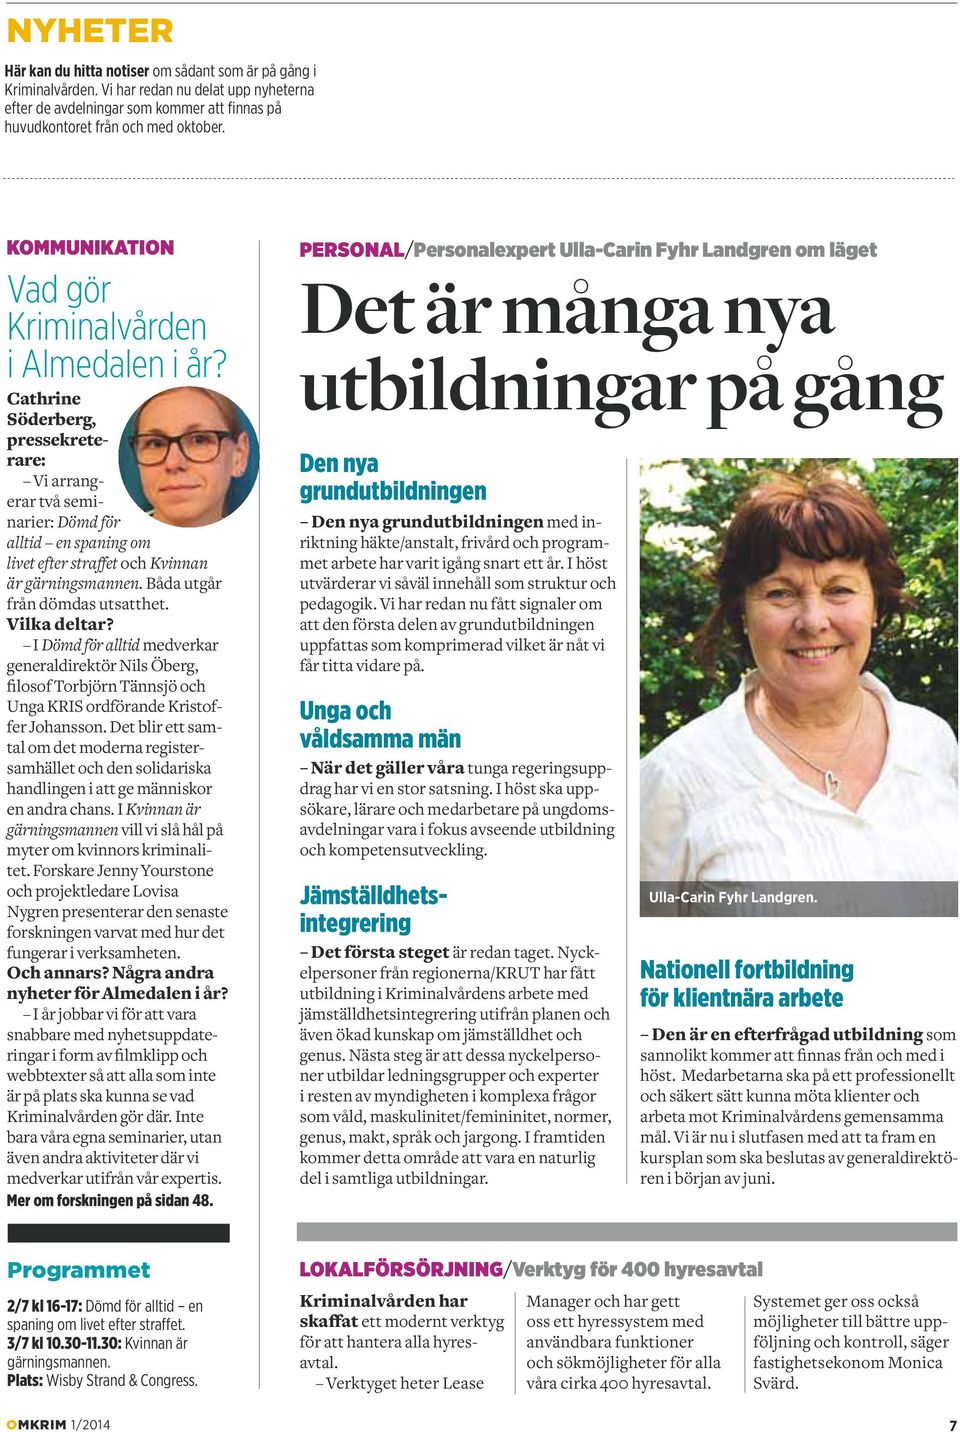 Cathrine Söderberg, pressekreterare: Vi arrangerar två seminarier: Dömd för alltid en spaning om livet efter straffet och Kvinnan är gärningsmannen. Båda utgår från dömdas utsatthet. Vilka deltar?